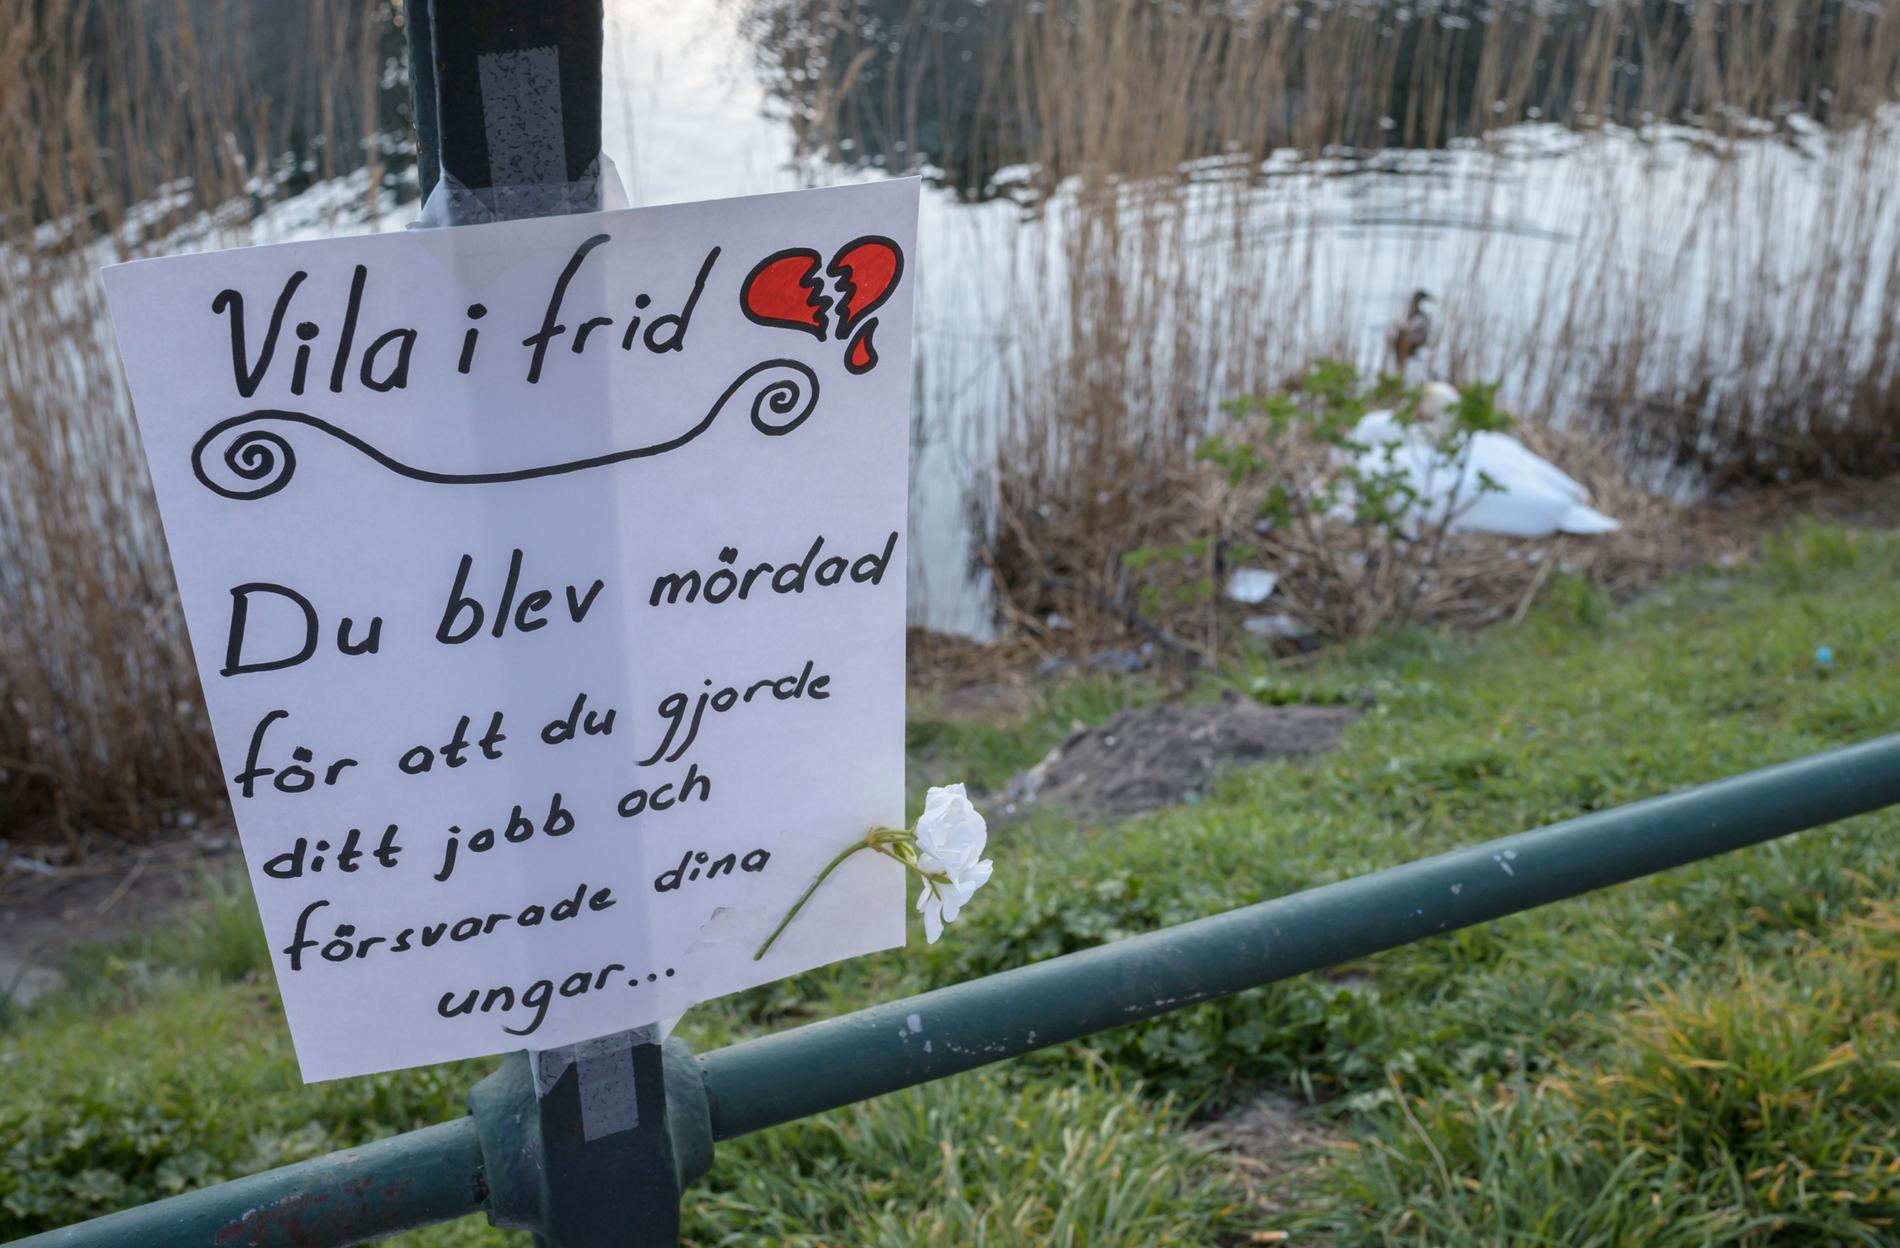 En skjuten svan väckte starka känslor i april. Nu byter Malmö stad taktik när en ny svanfamilj flyttat in.